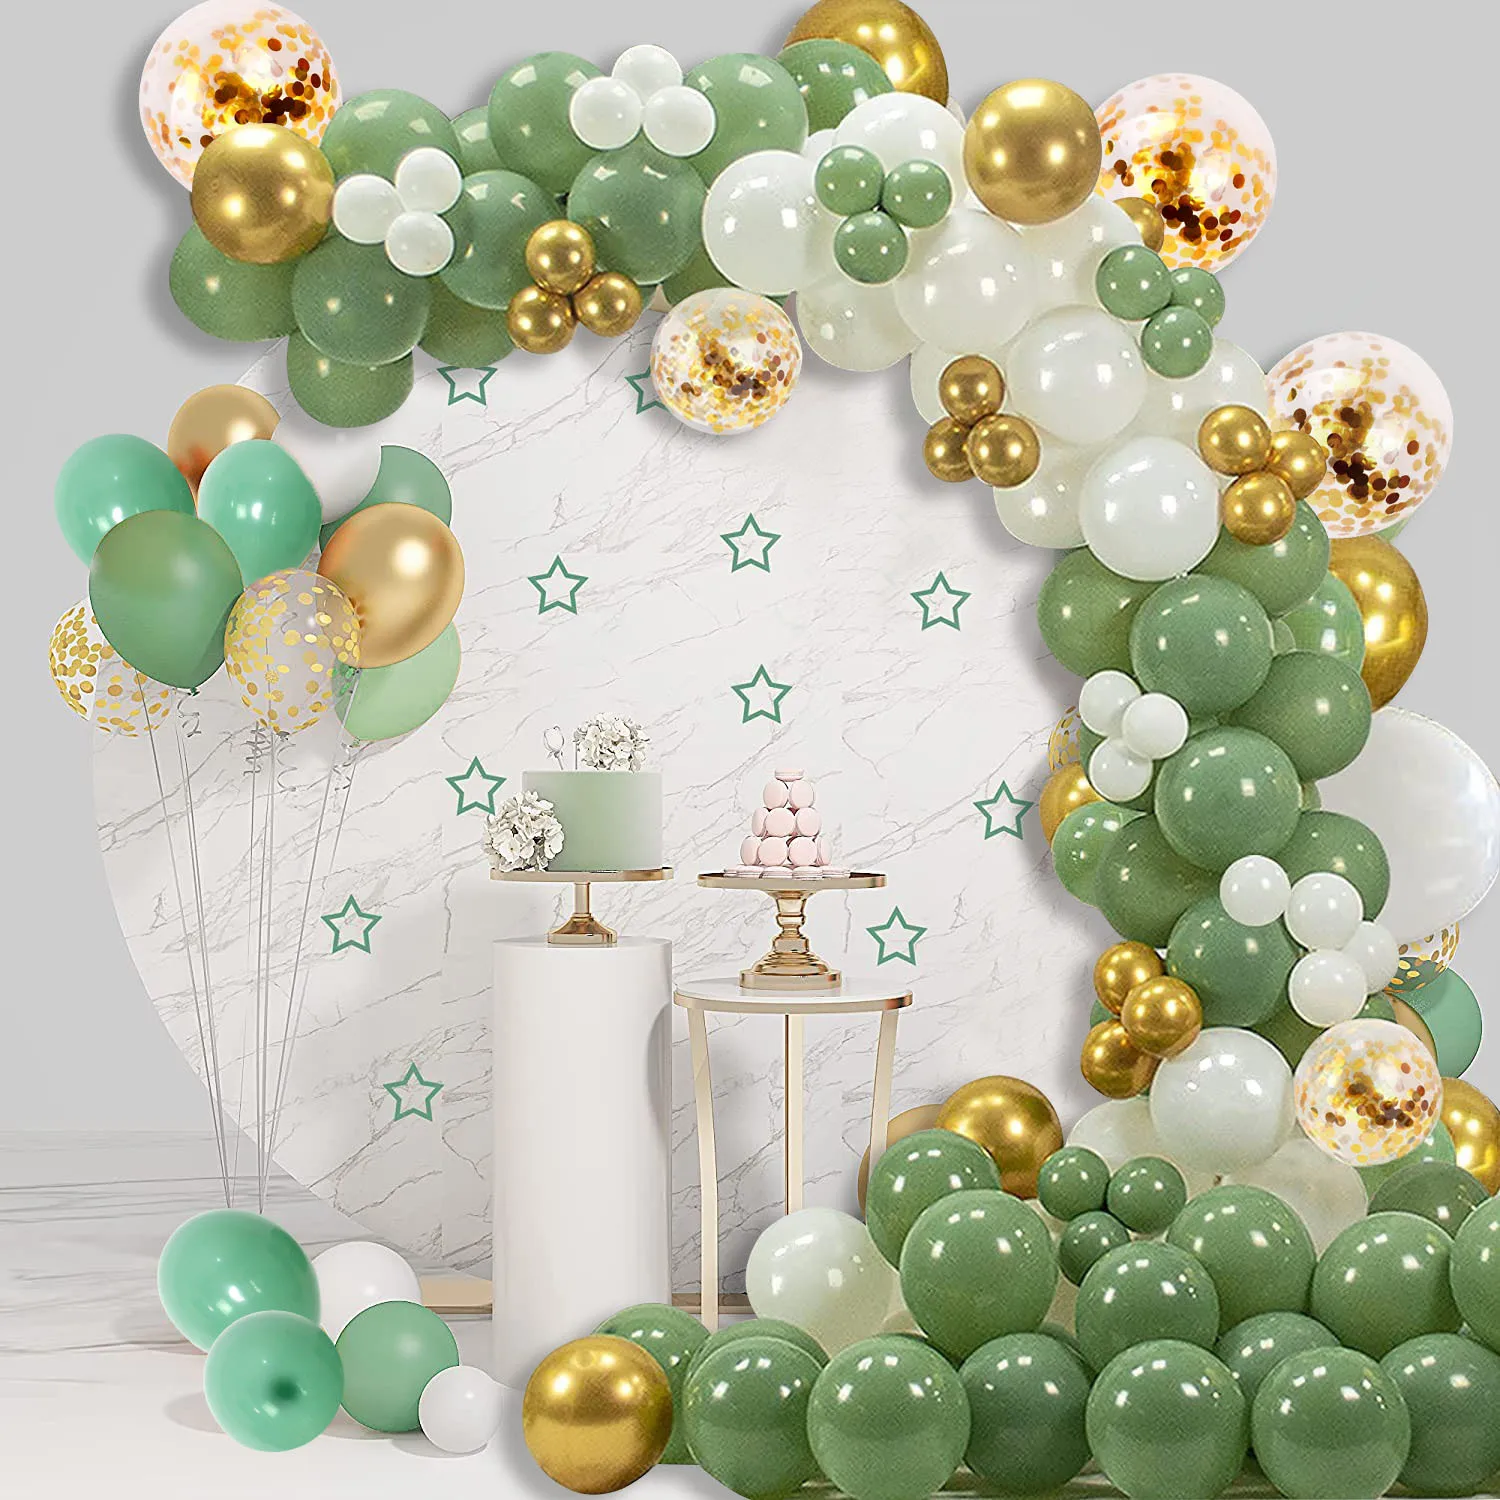 

SURSURPIRSE White Gold Metallic Confetti Balloon Garland Arch Kit for Birthday Party Wedding Anniversary Baby Shower Supplies